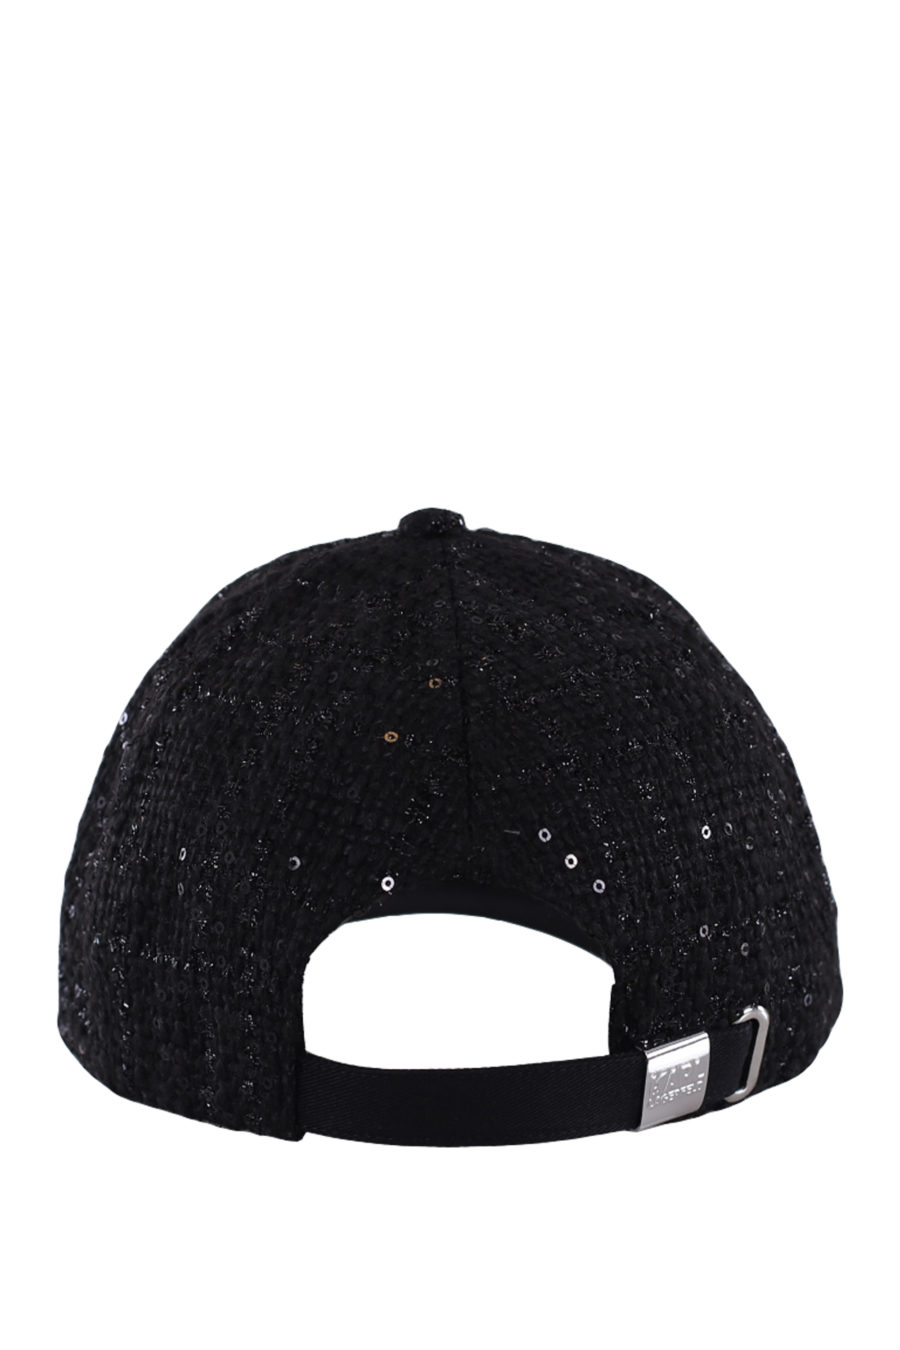 Gorra negra con pin de la marca - IMG 0208